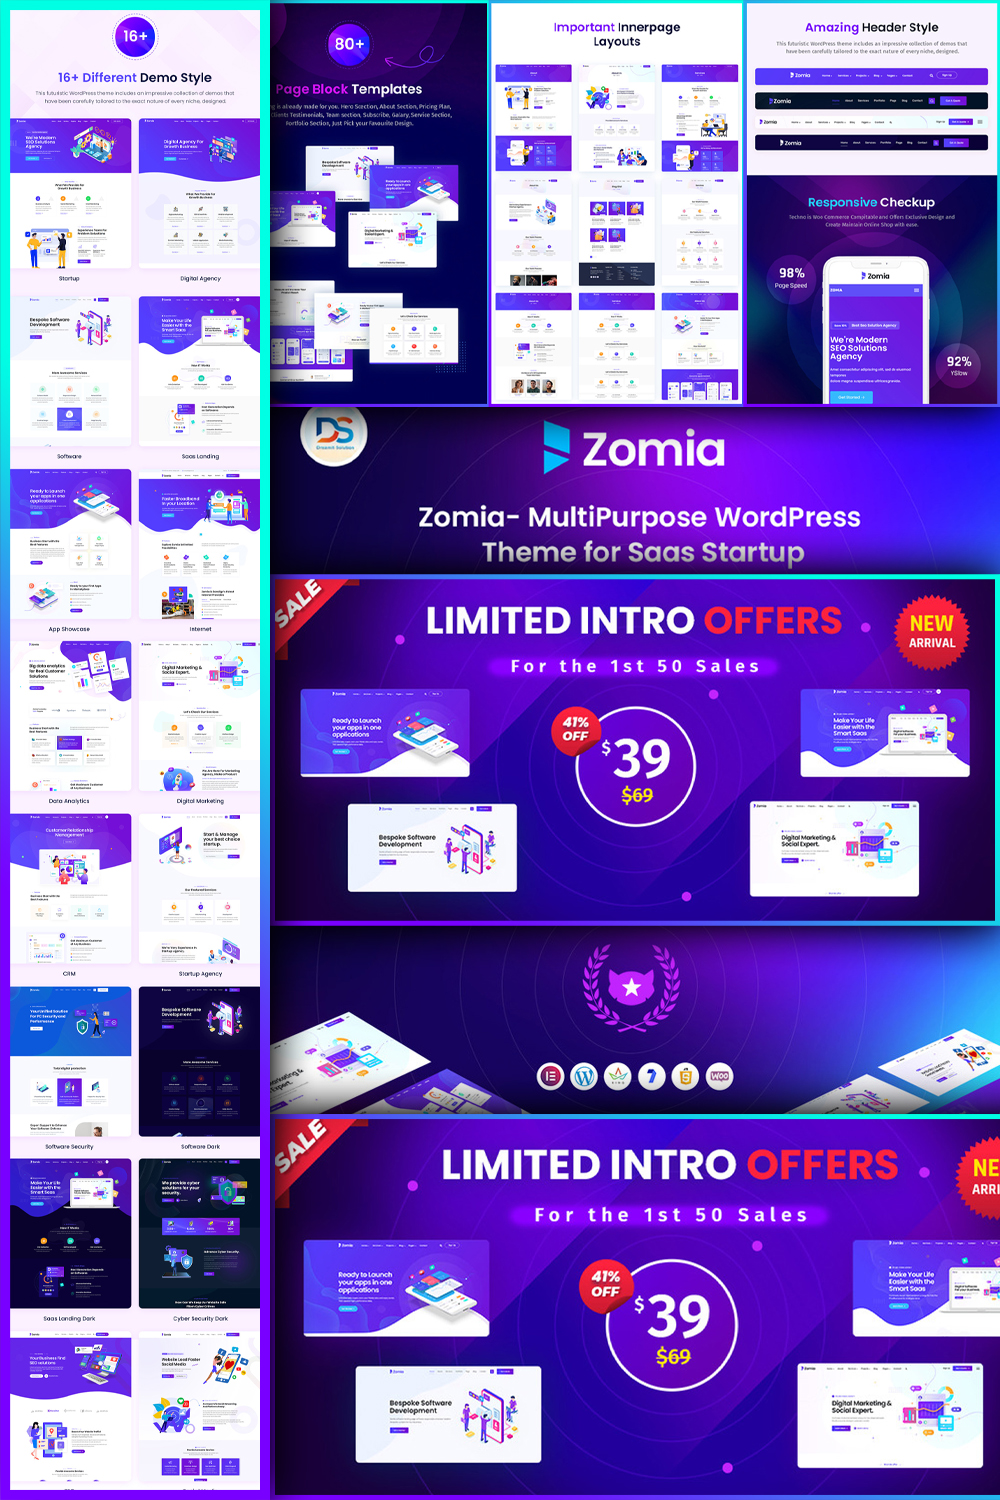 Zomia - Multi-Purpose WordPress Theme For Saas Startup - Pinterest.